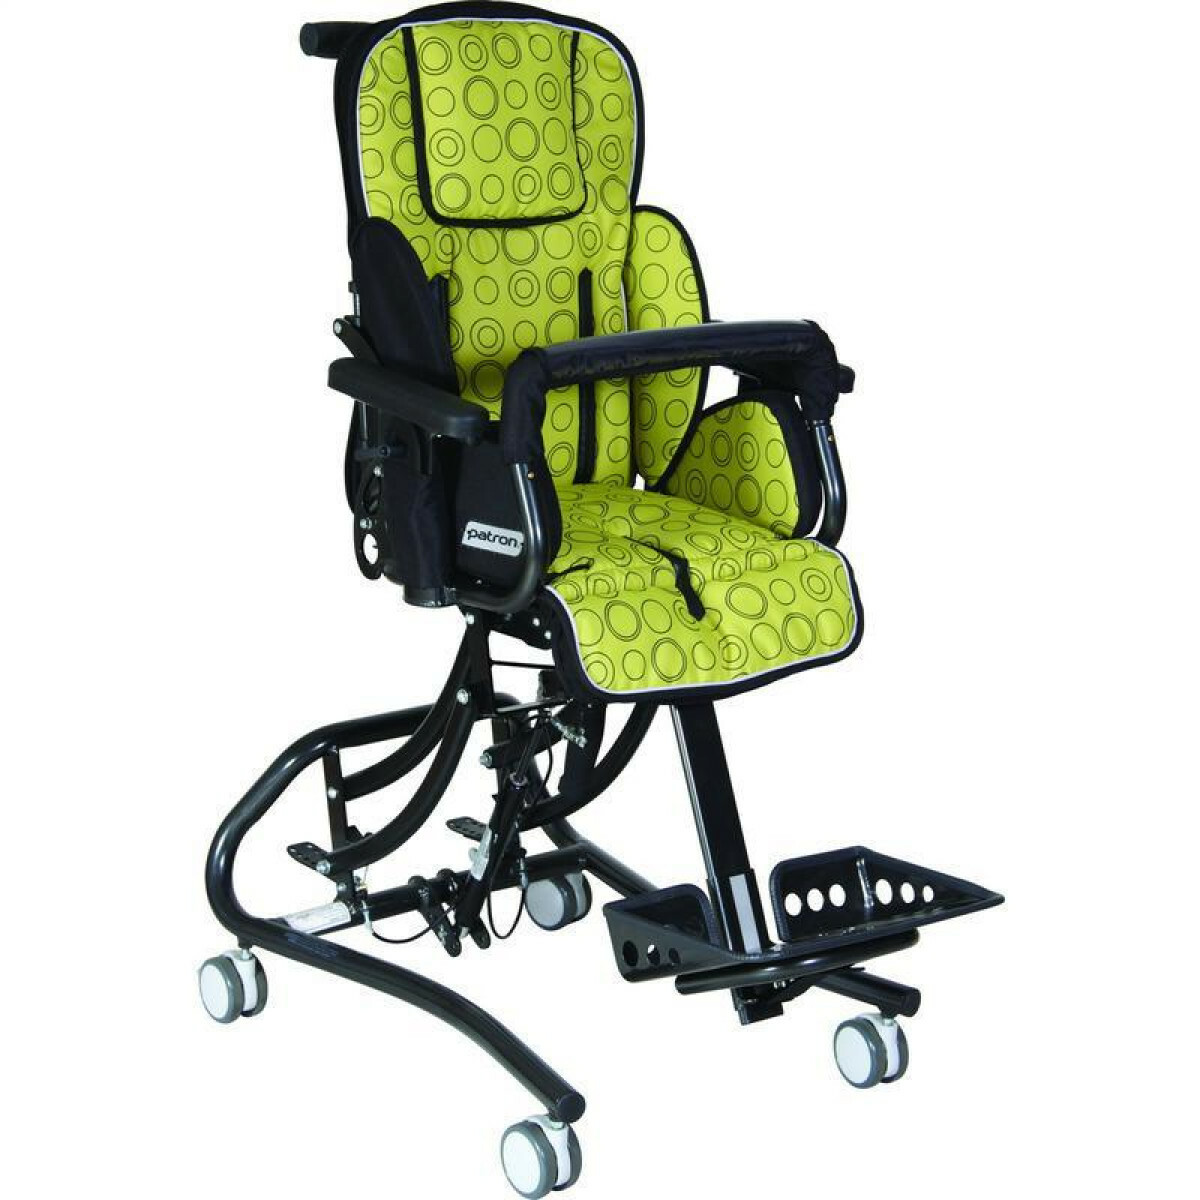 Коляска патрон для детей. Кресло patron Froggo реабилитационное. Коляска кресло-коляска patron Froggo. Патрон Фрого детская инвалидная коляска. Patron коляска для детей с ДЦП.